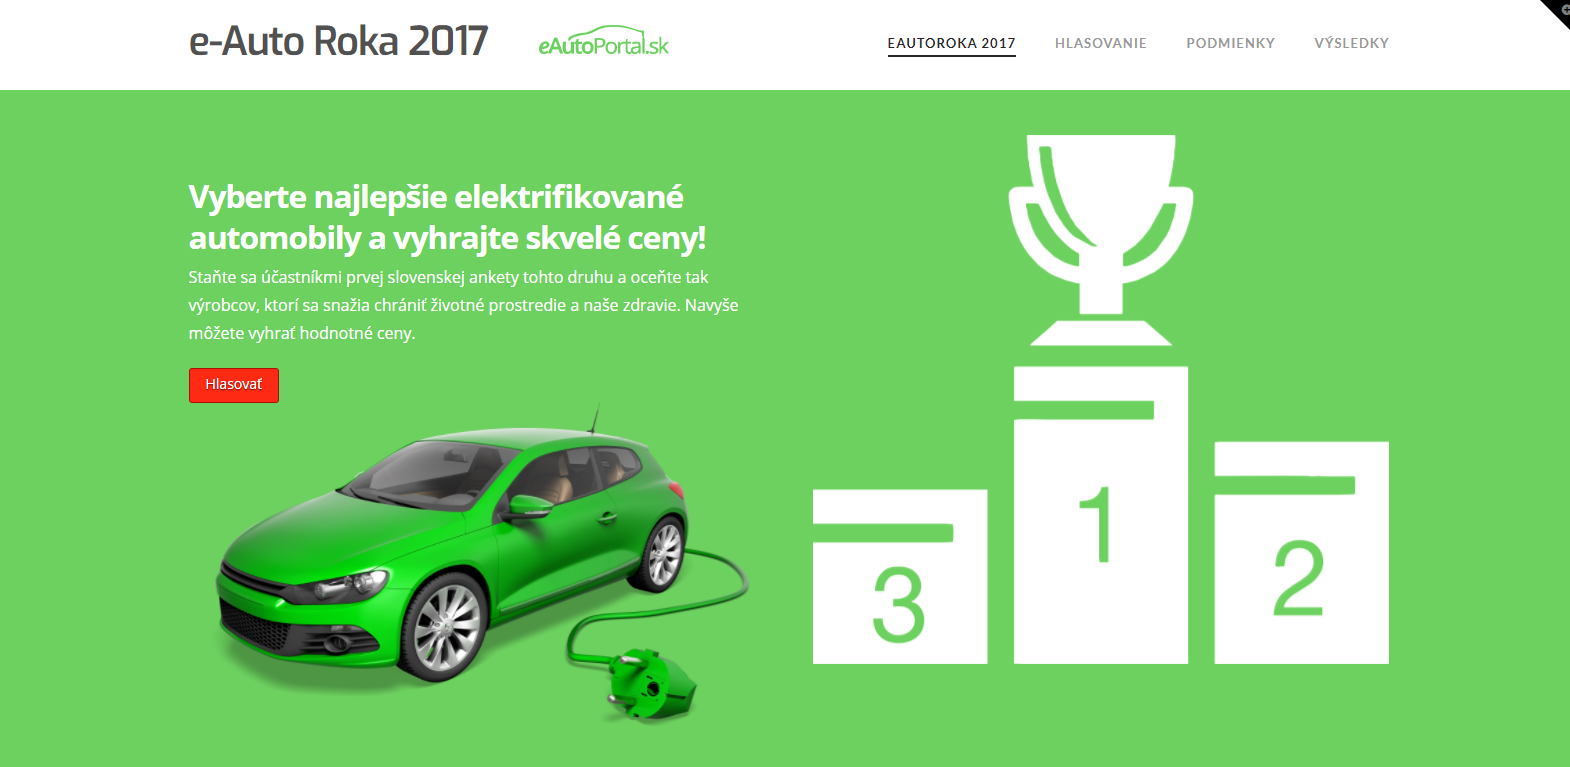 e-auto roka 2017